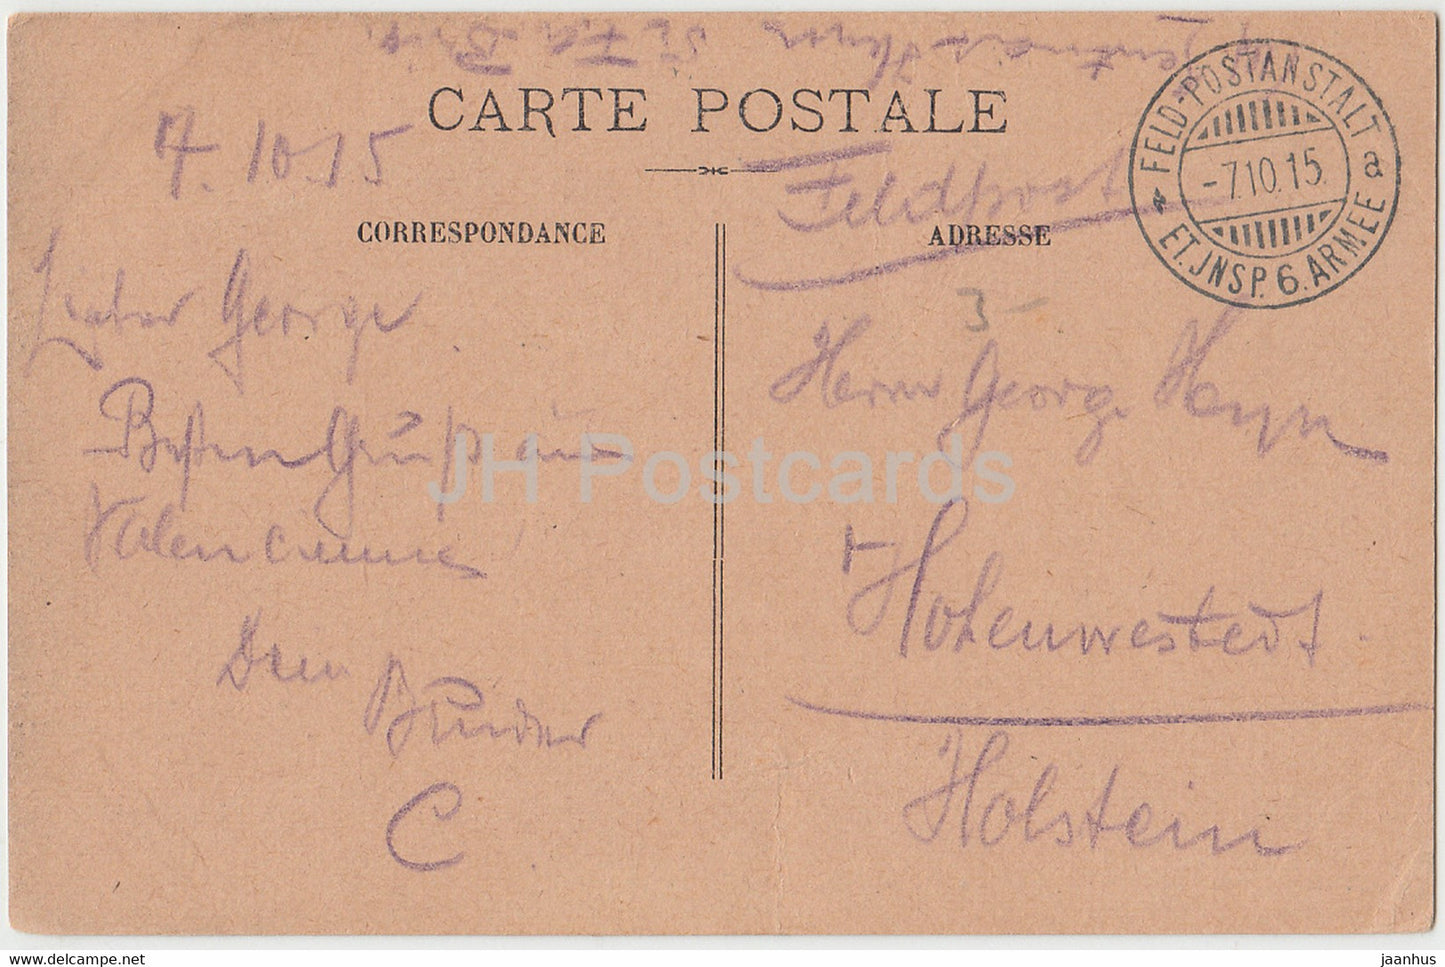 Valenciennes - Eglise Notre Dame - Kirche - 6 Armeen - Feldpost - alte Postkarte - 1915 - Frankreich - gebraucht